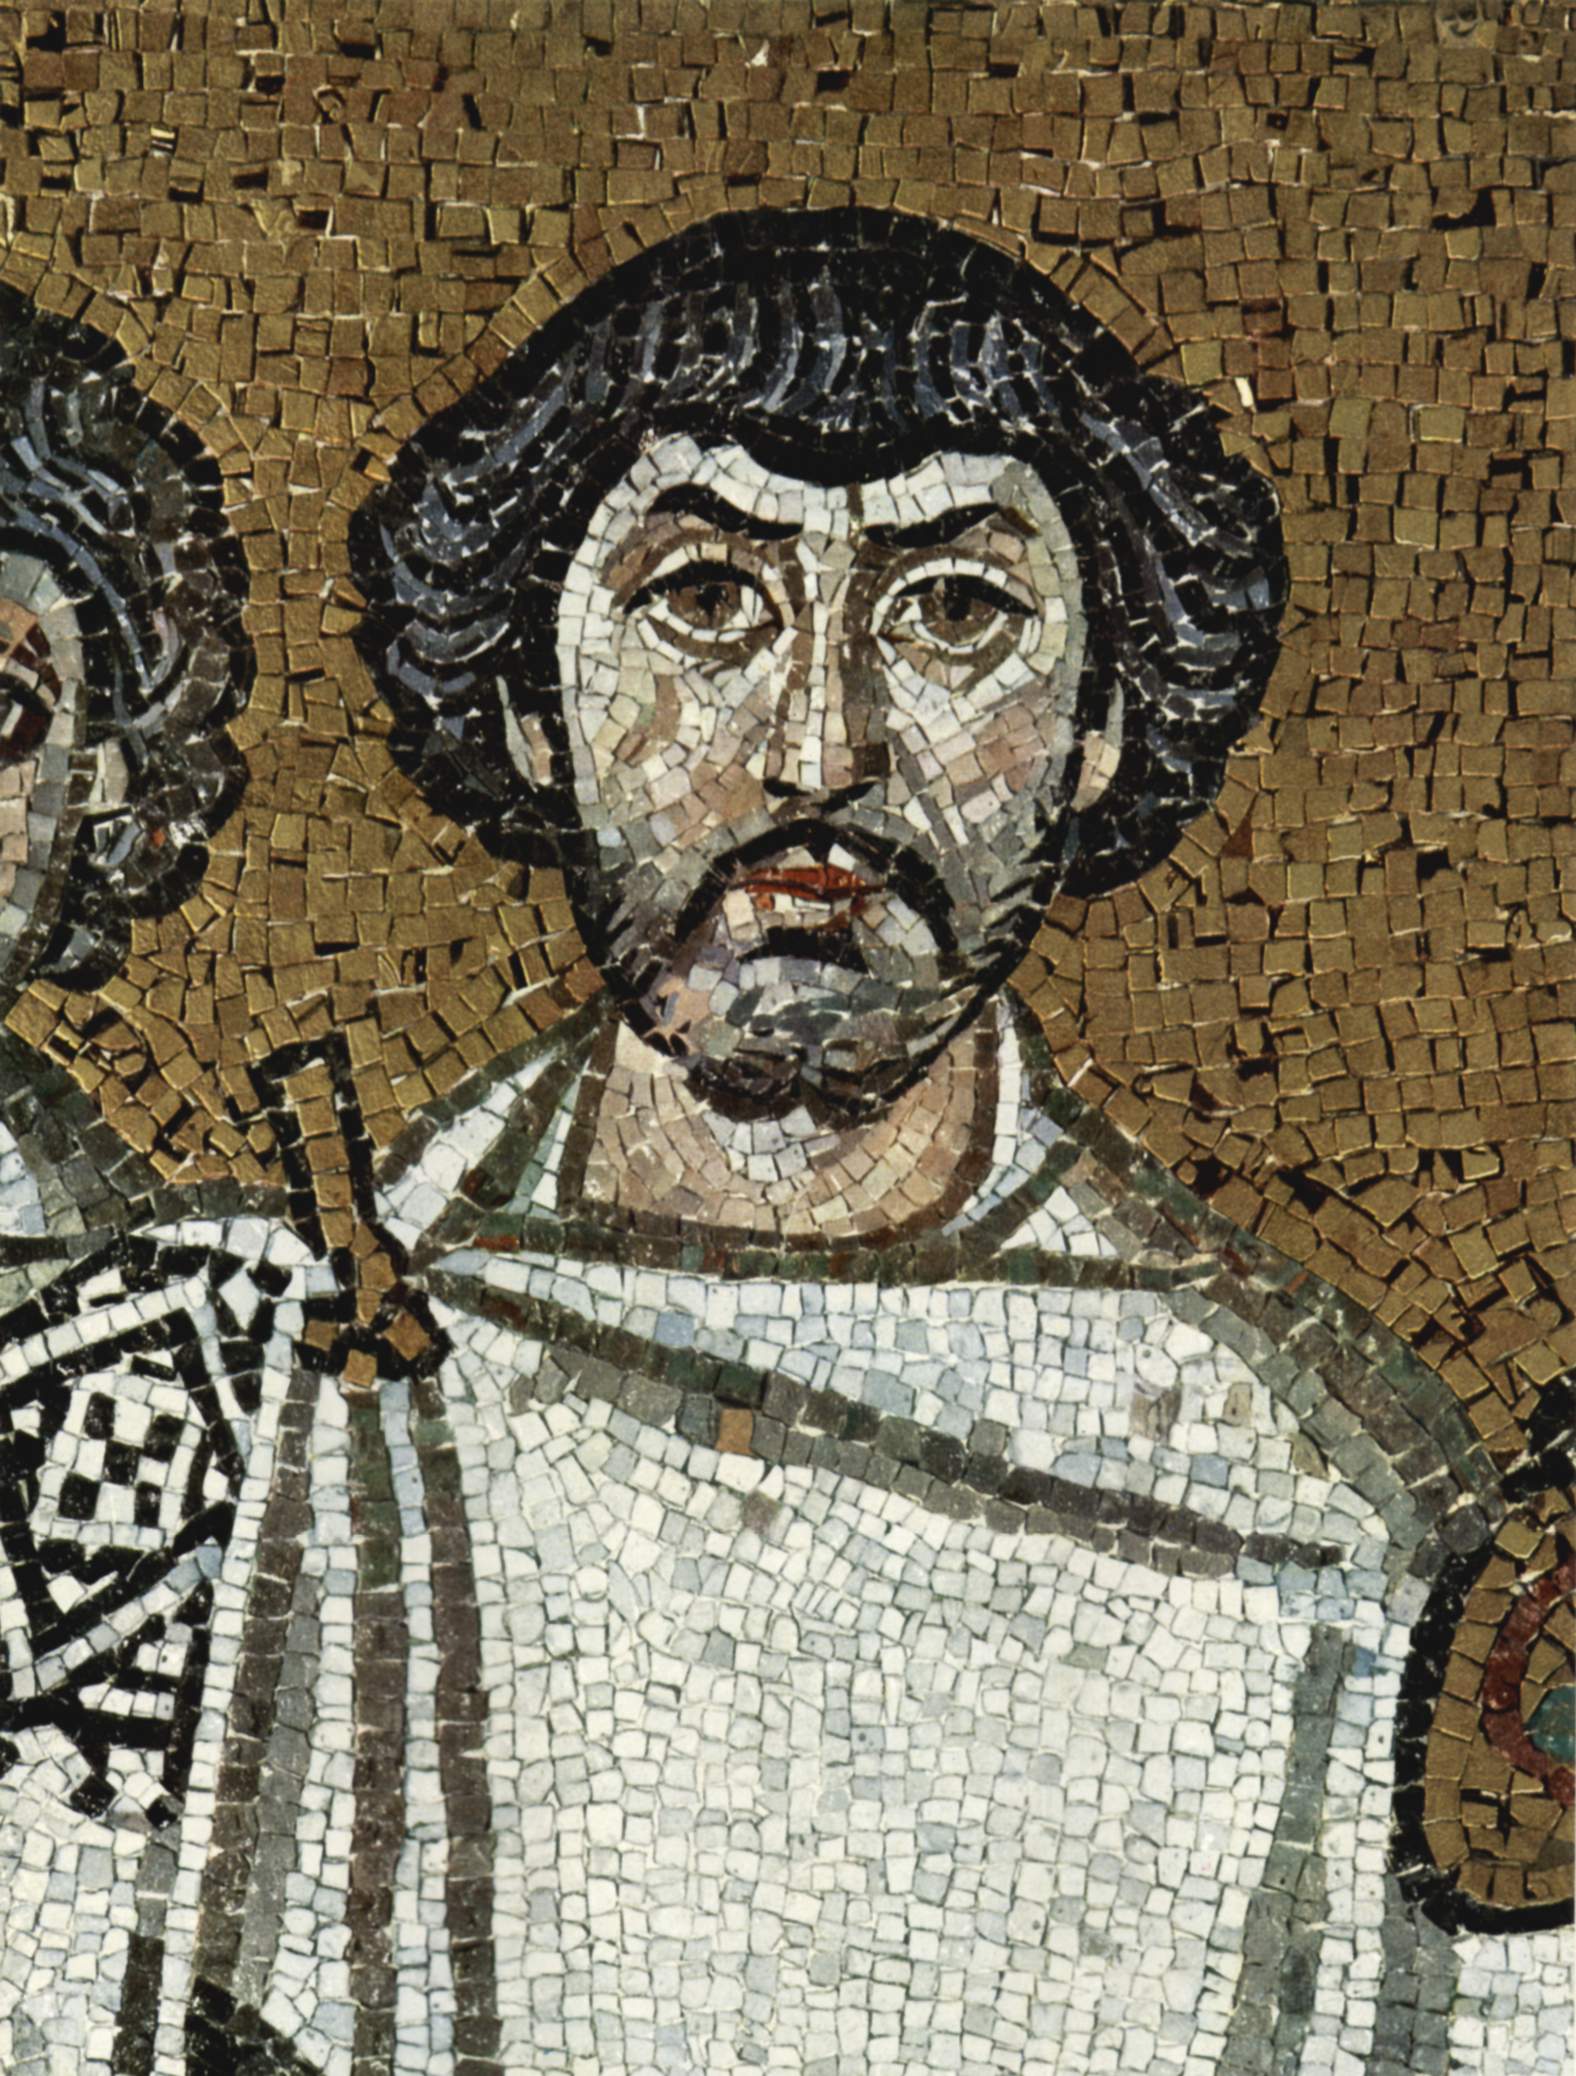 Предположительно - изображение Велизария. Фрагмент мозаики храма Сент-Витале из Равенны